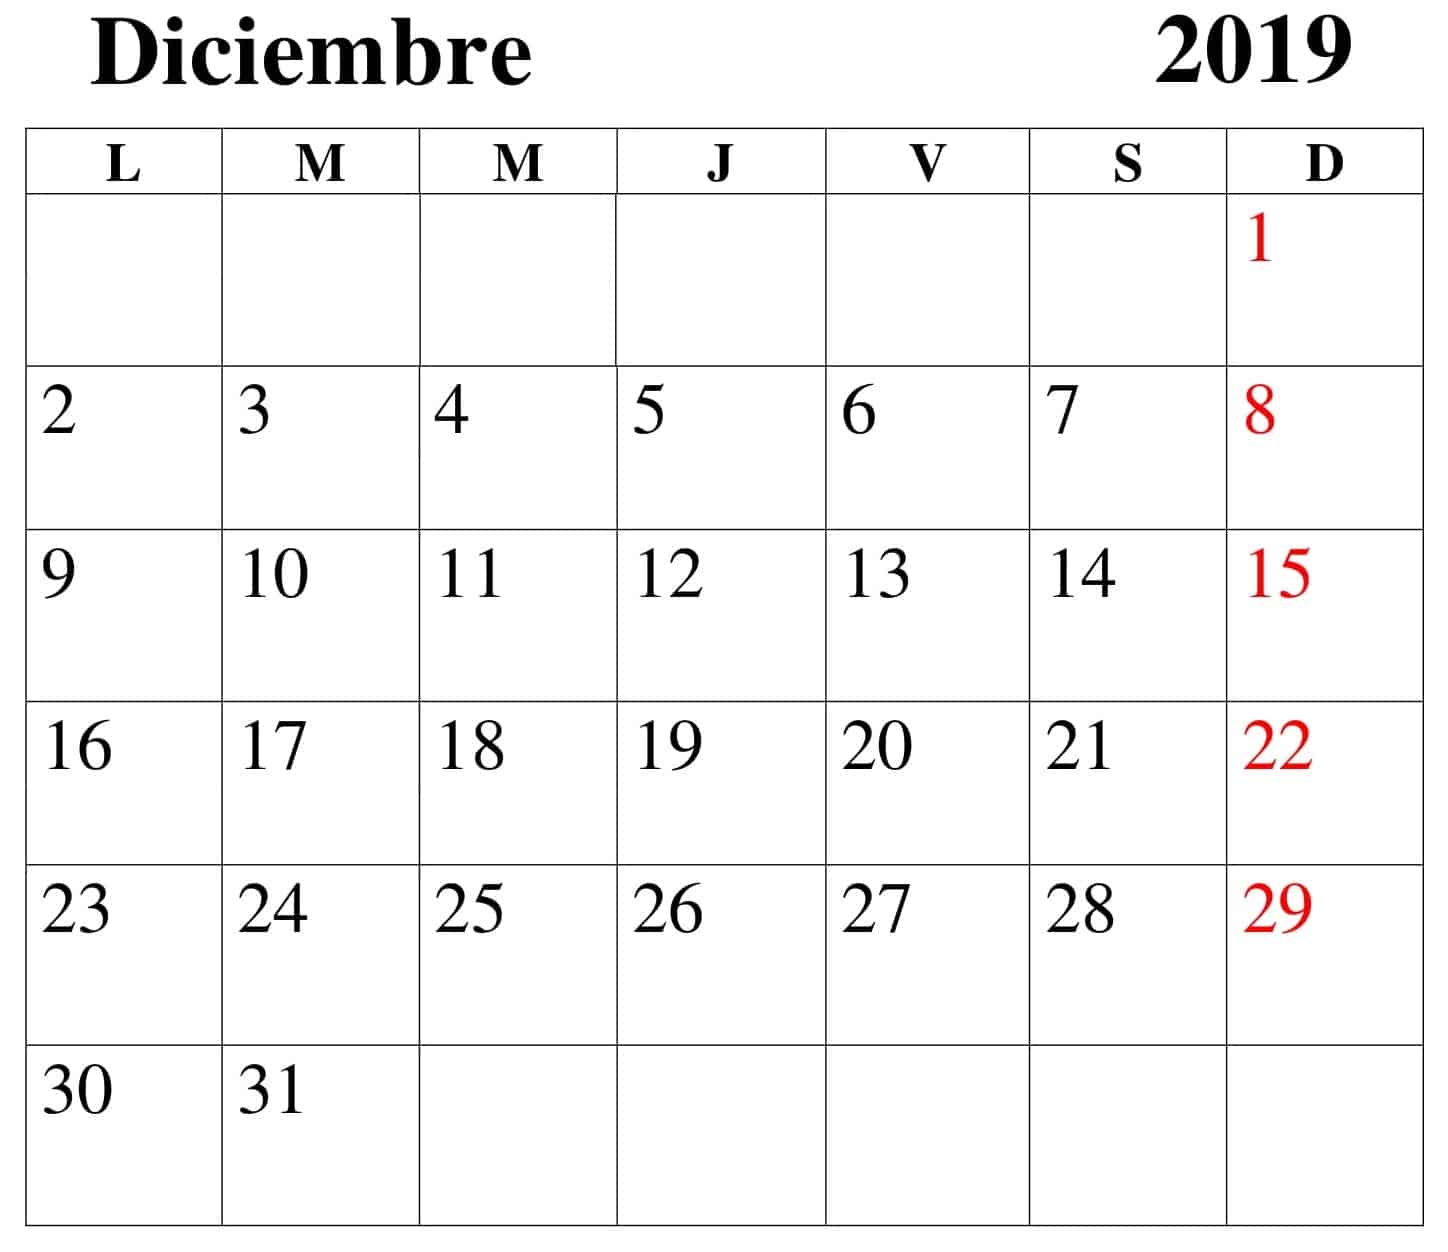 Calendario Diciembre 2019 Para Imprimir